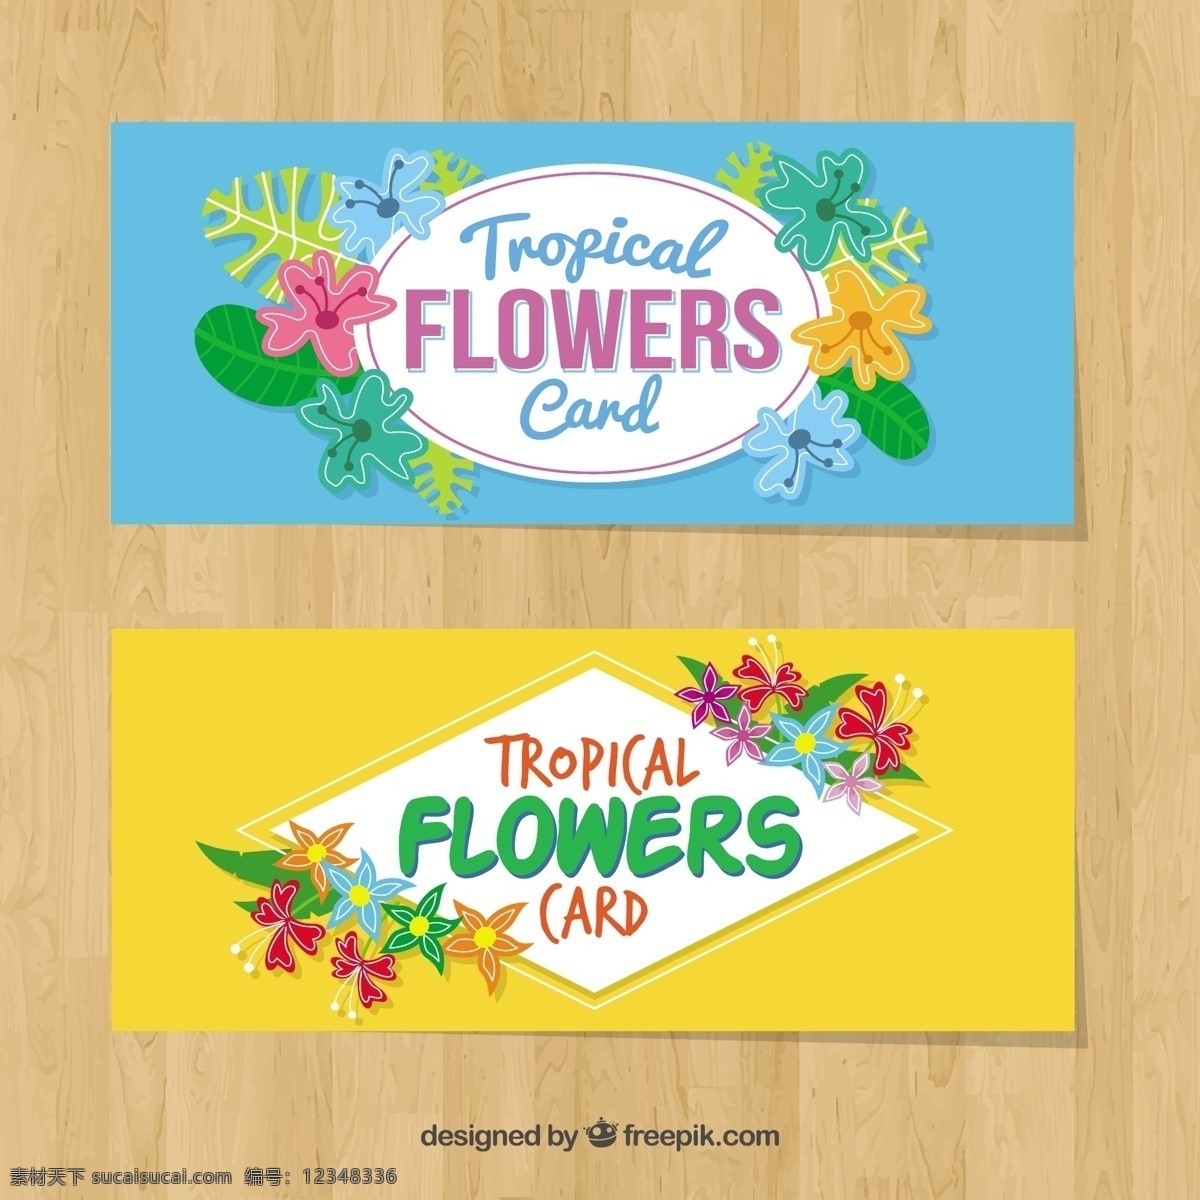 五颜六色 鲜花 卡片 花卉 请柬 自然 树叶 热带 植物 贺卡 棕榈 开花 美丽 热带花卉 野生 花卉卡片